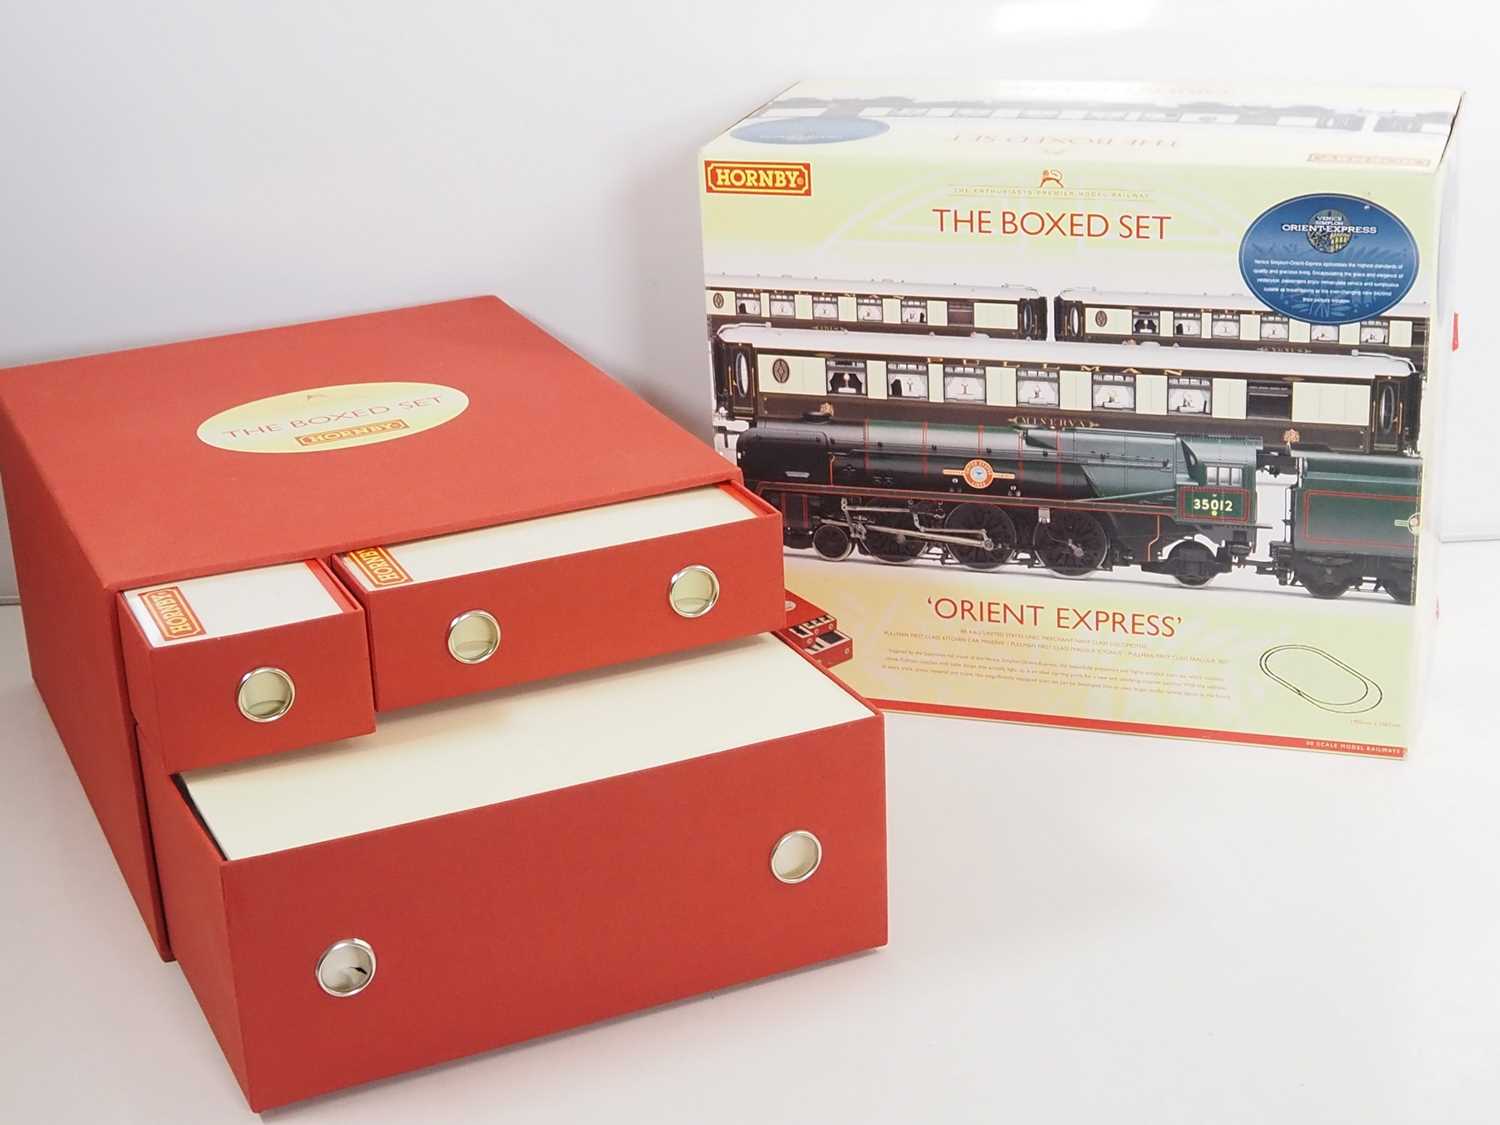 A HORNBY R1038 OO gauge 'Orient Express' premium boxed set comprising a Merchant Navy Class steam